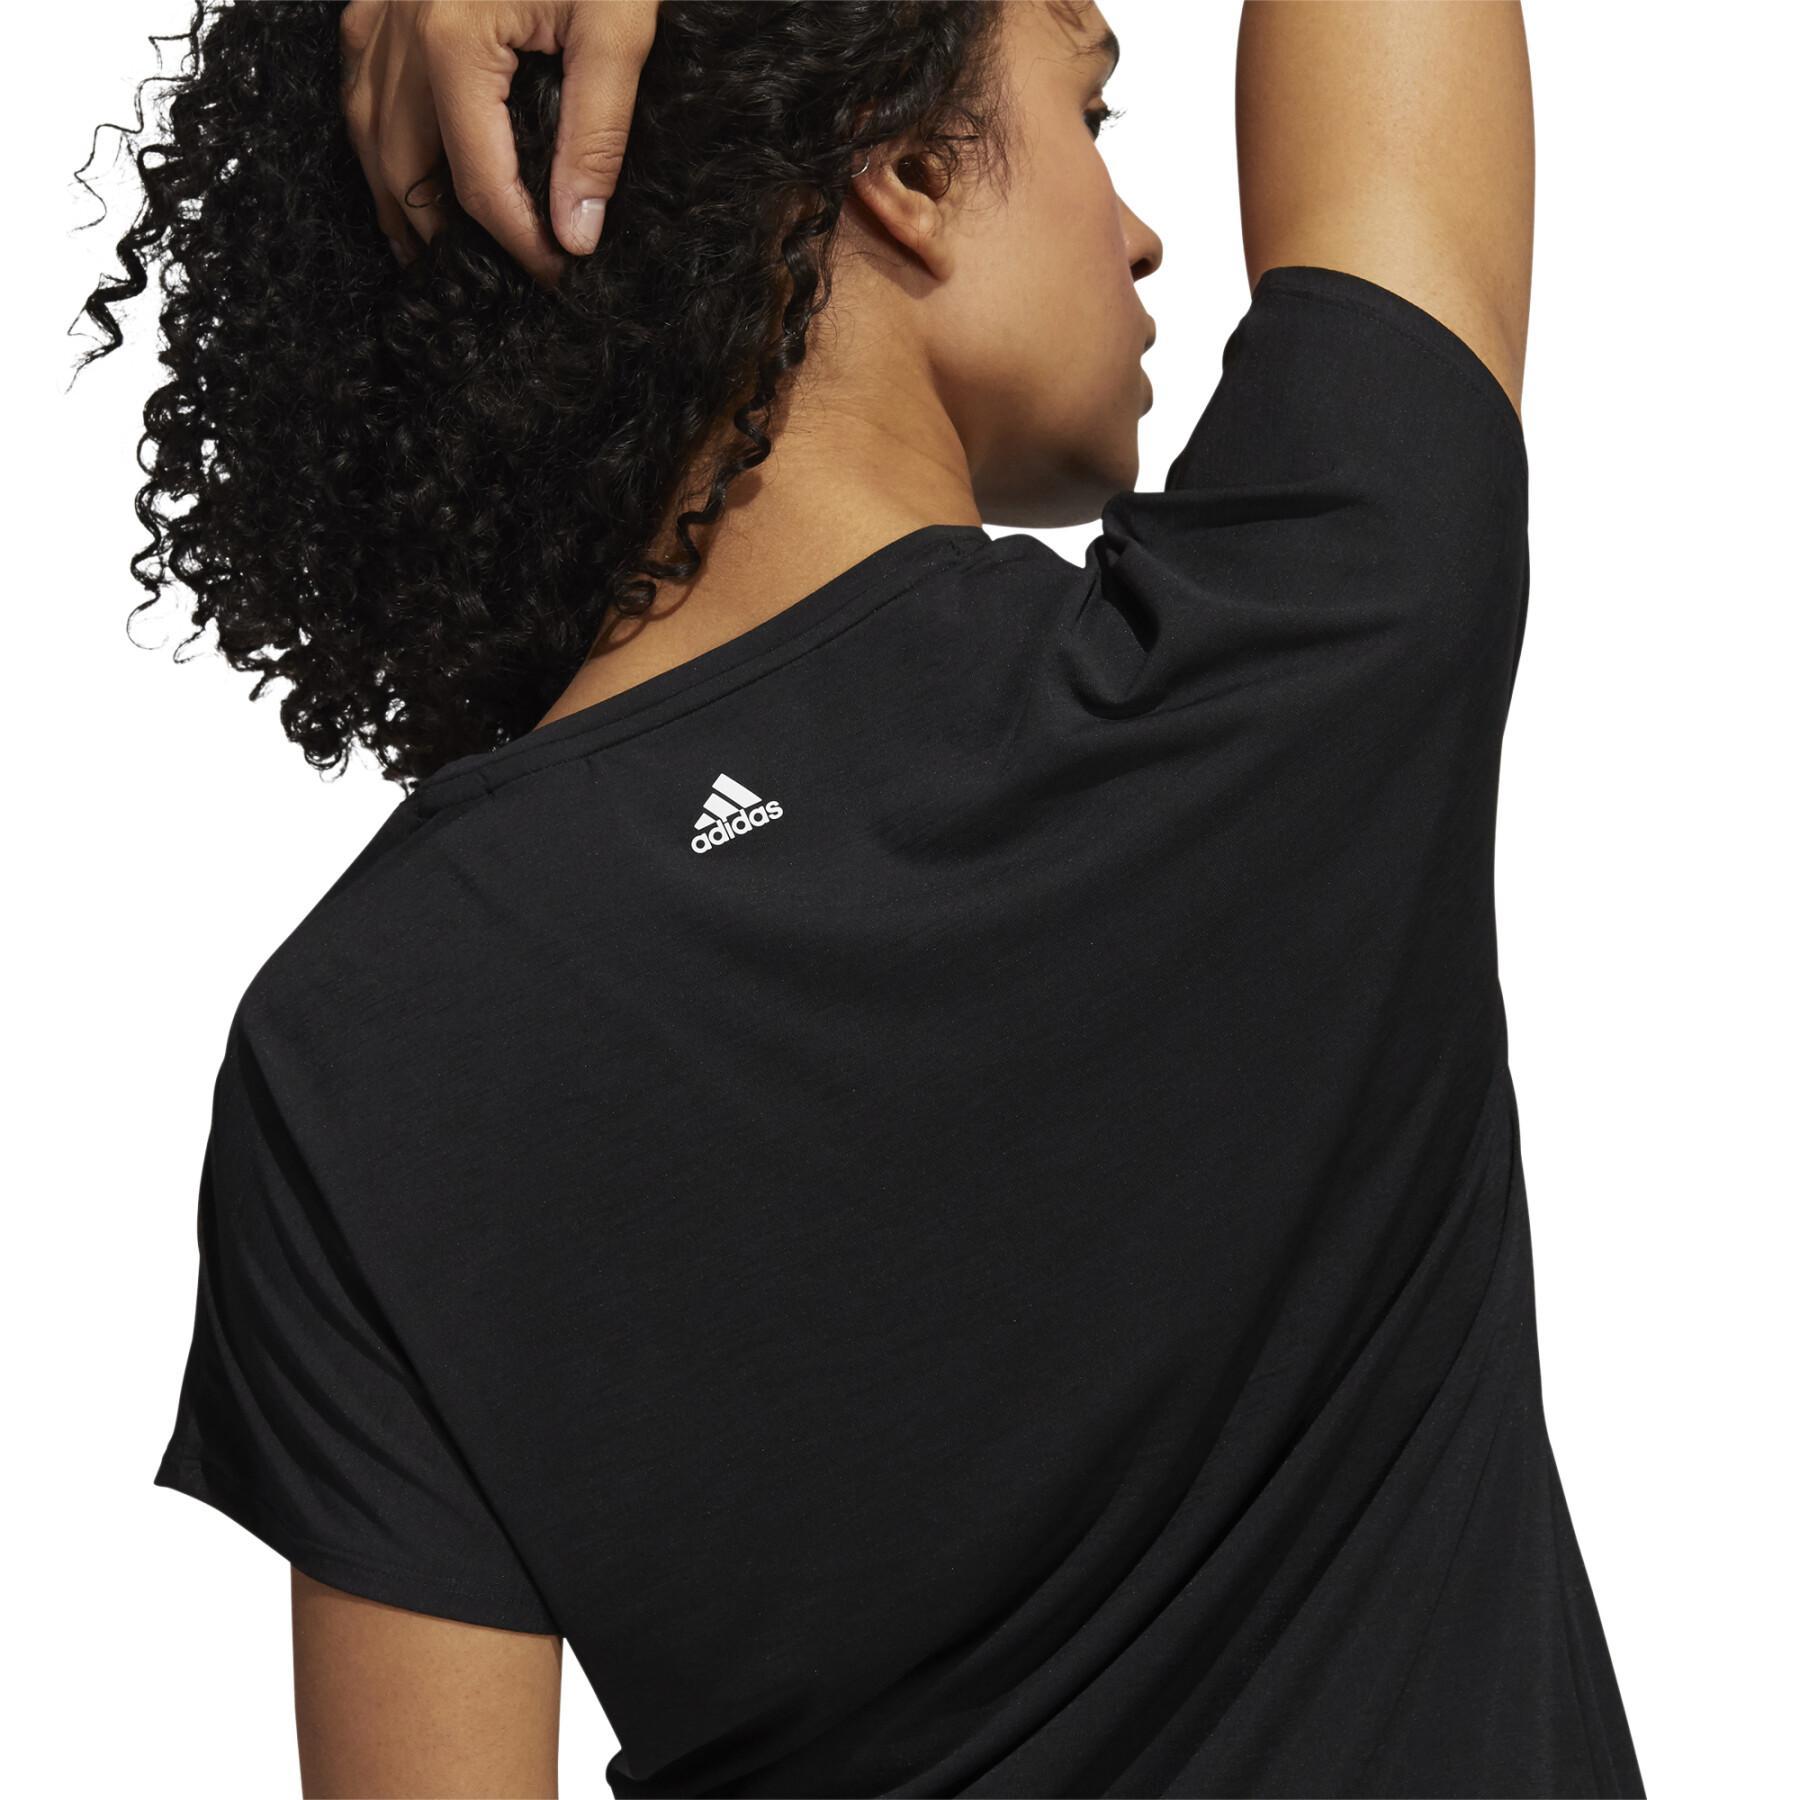 T-shirt för kvinnor adidas 3-Stripes Training